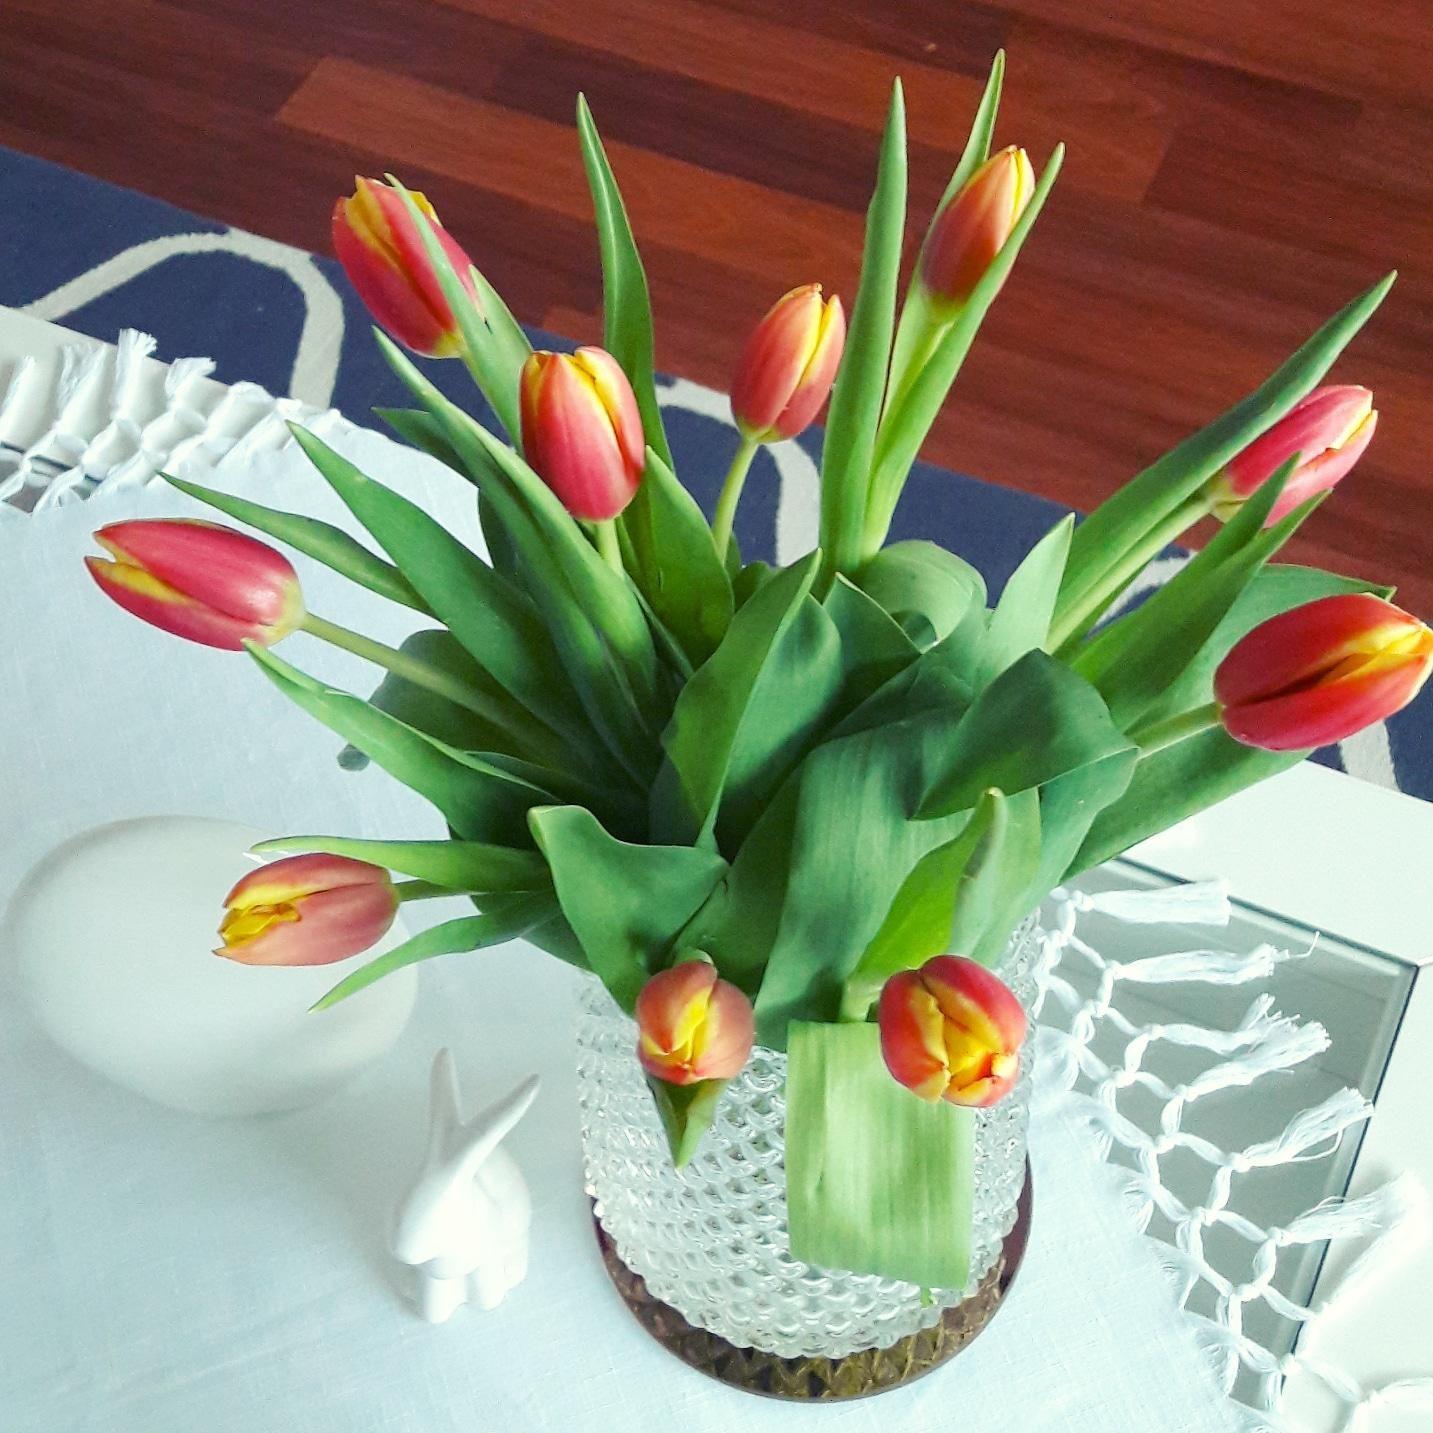 Meine Frühlingsboten 😍
#frühlingsdeko #frühlingsgefühle #flowers #easter #springtime #spring